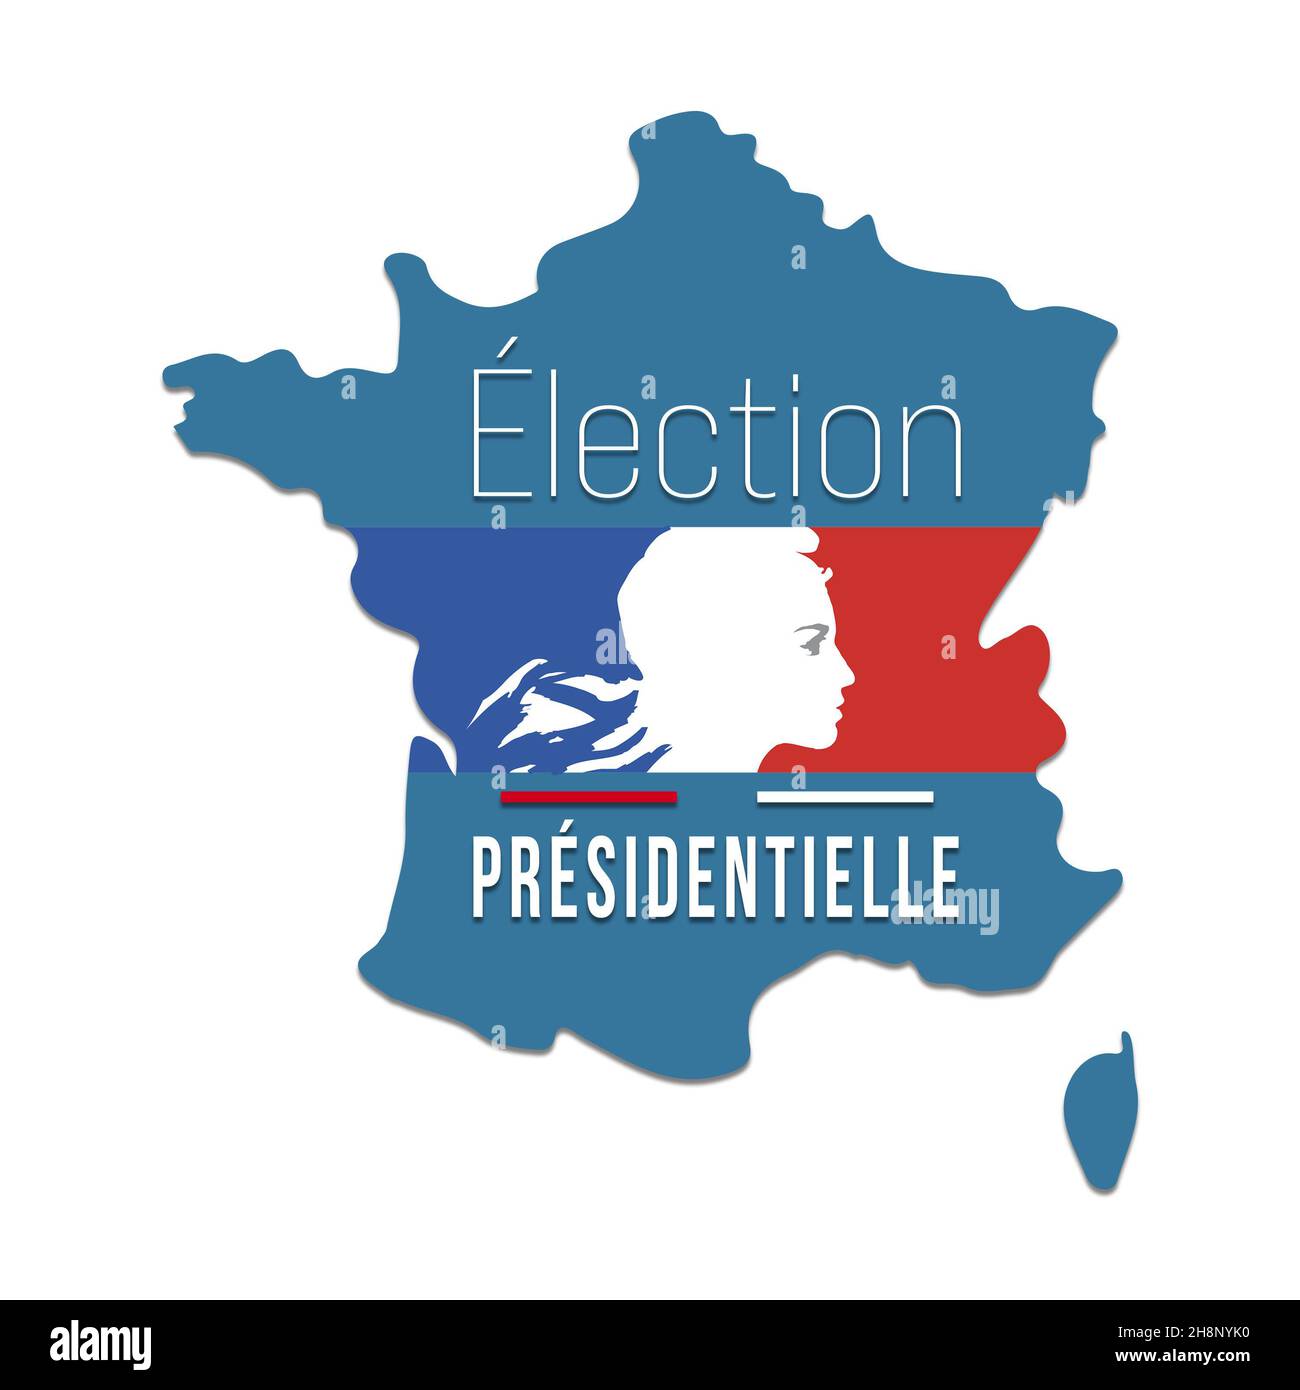 Elezioni presidenziali Francia 2022 - voto del 10 e 24 aprile 2022 - Banner Foto Stock